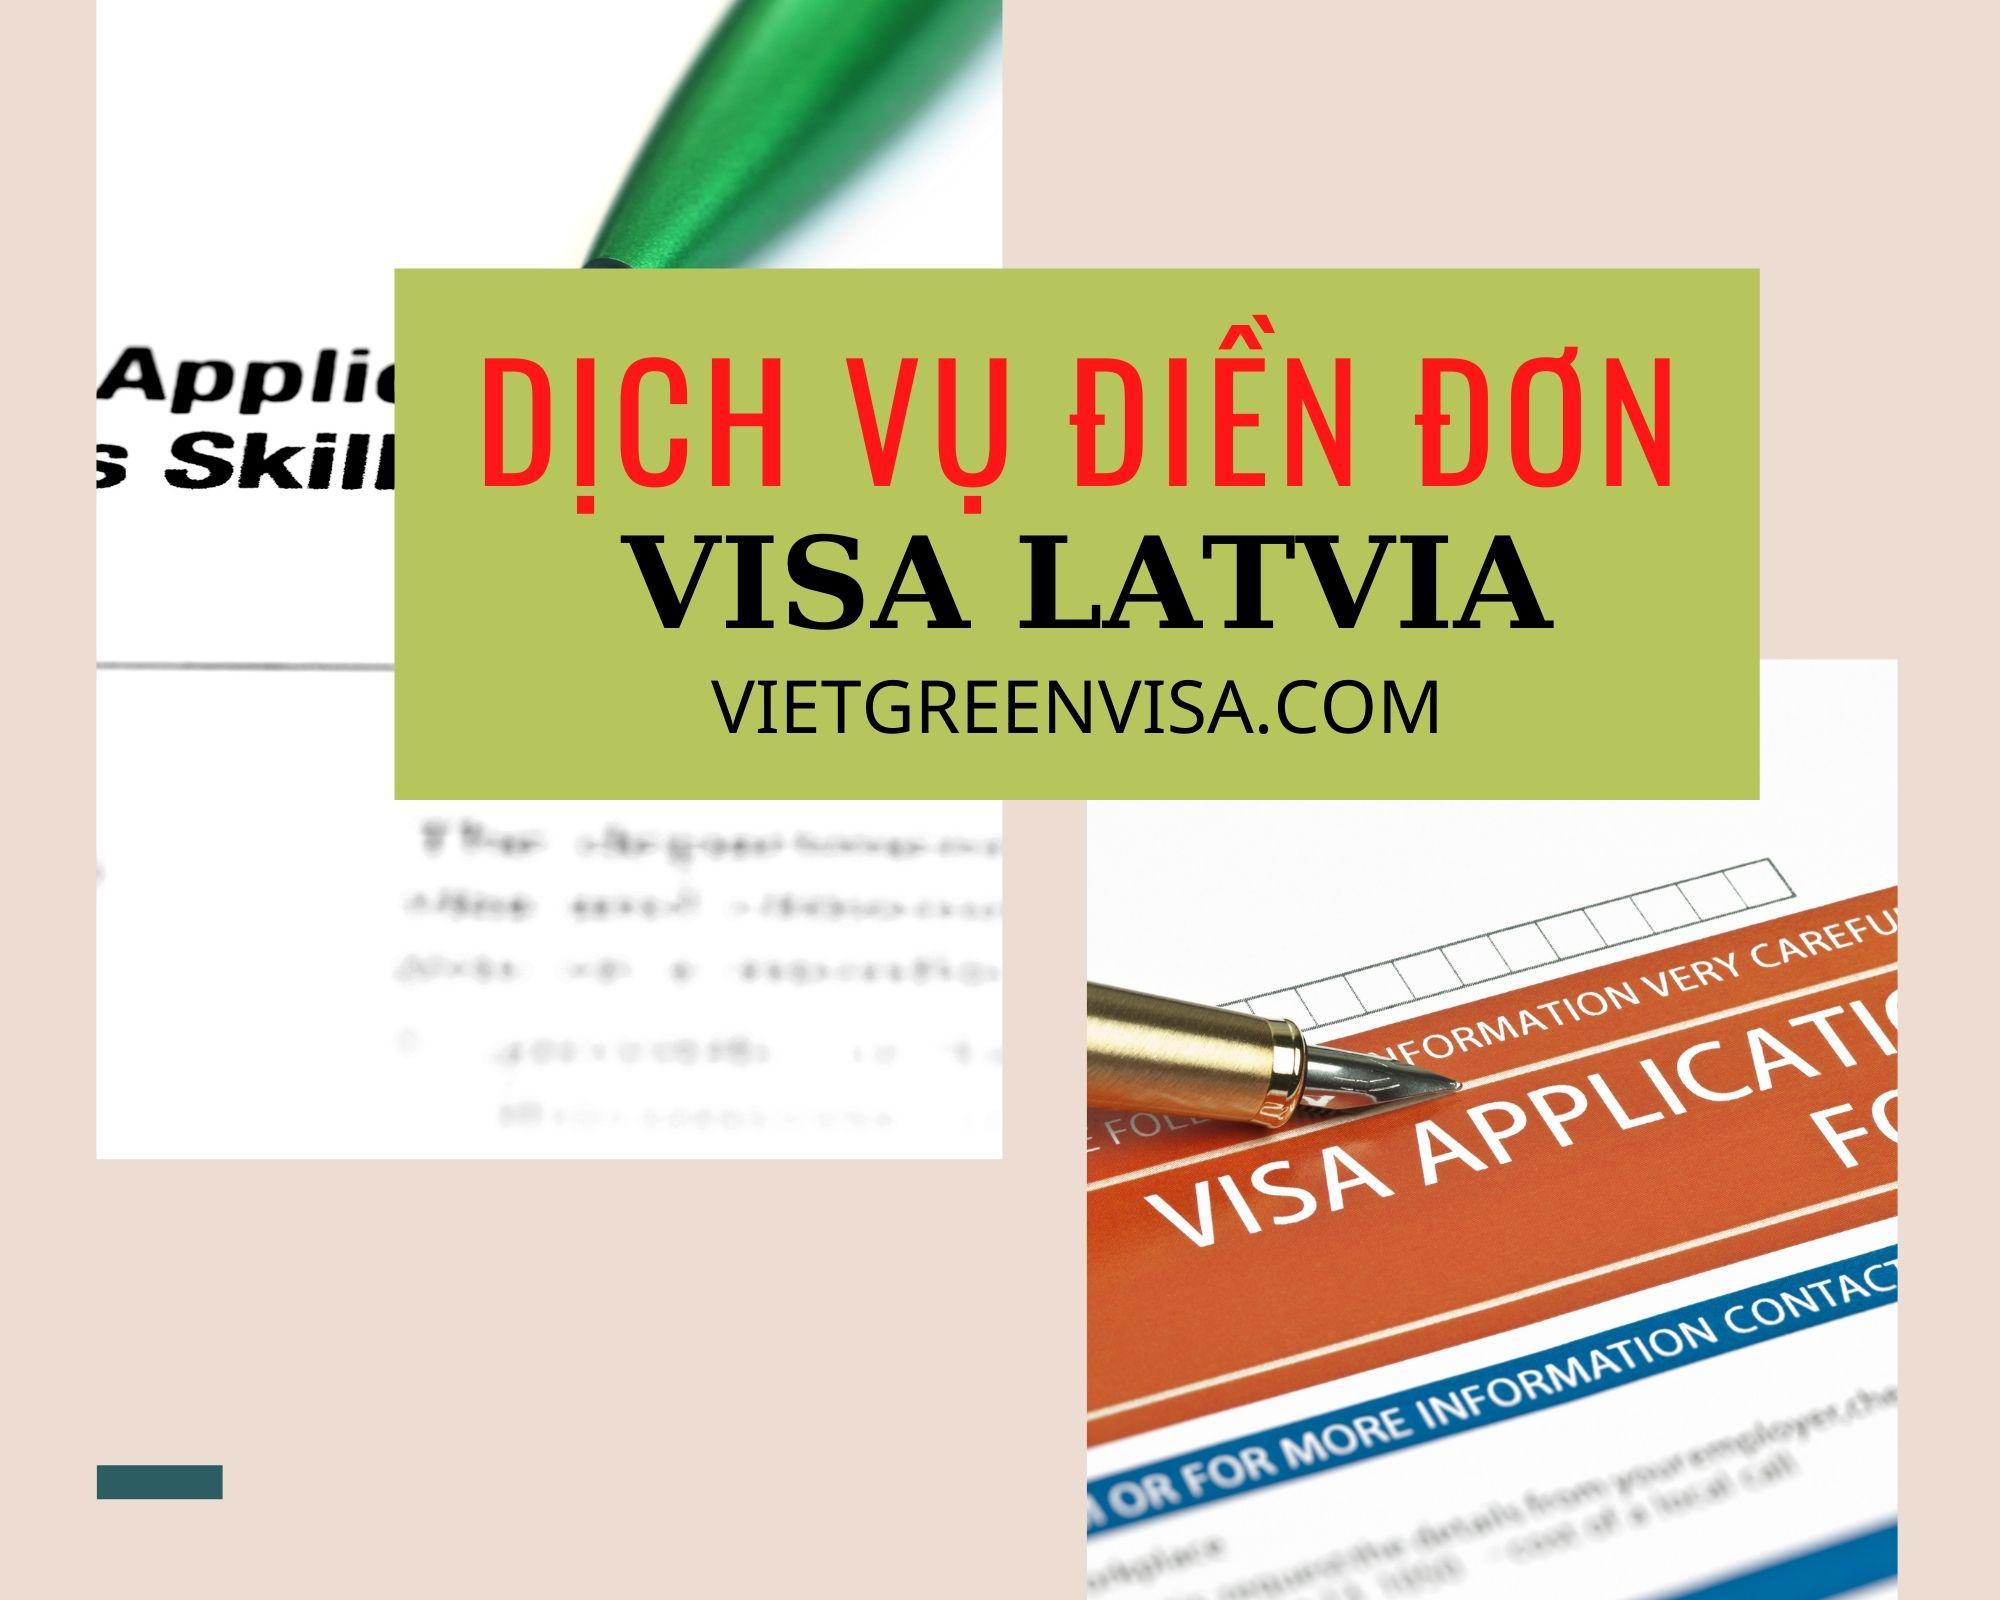 Dịch vụ điền đơn visa Latvia online nhanh chóng